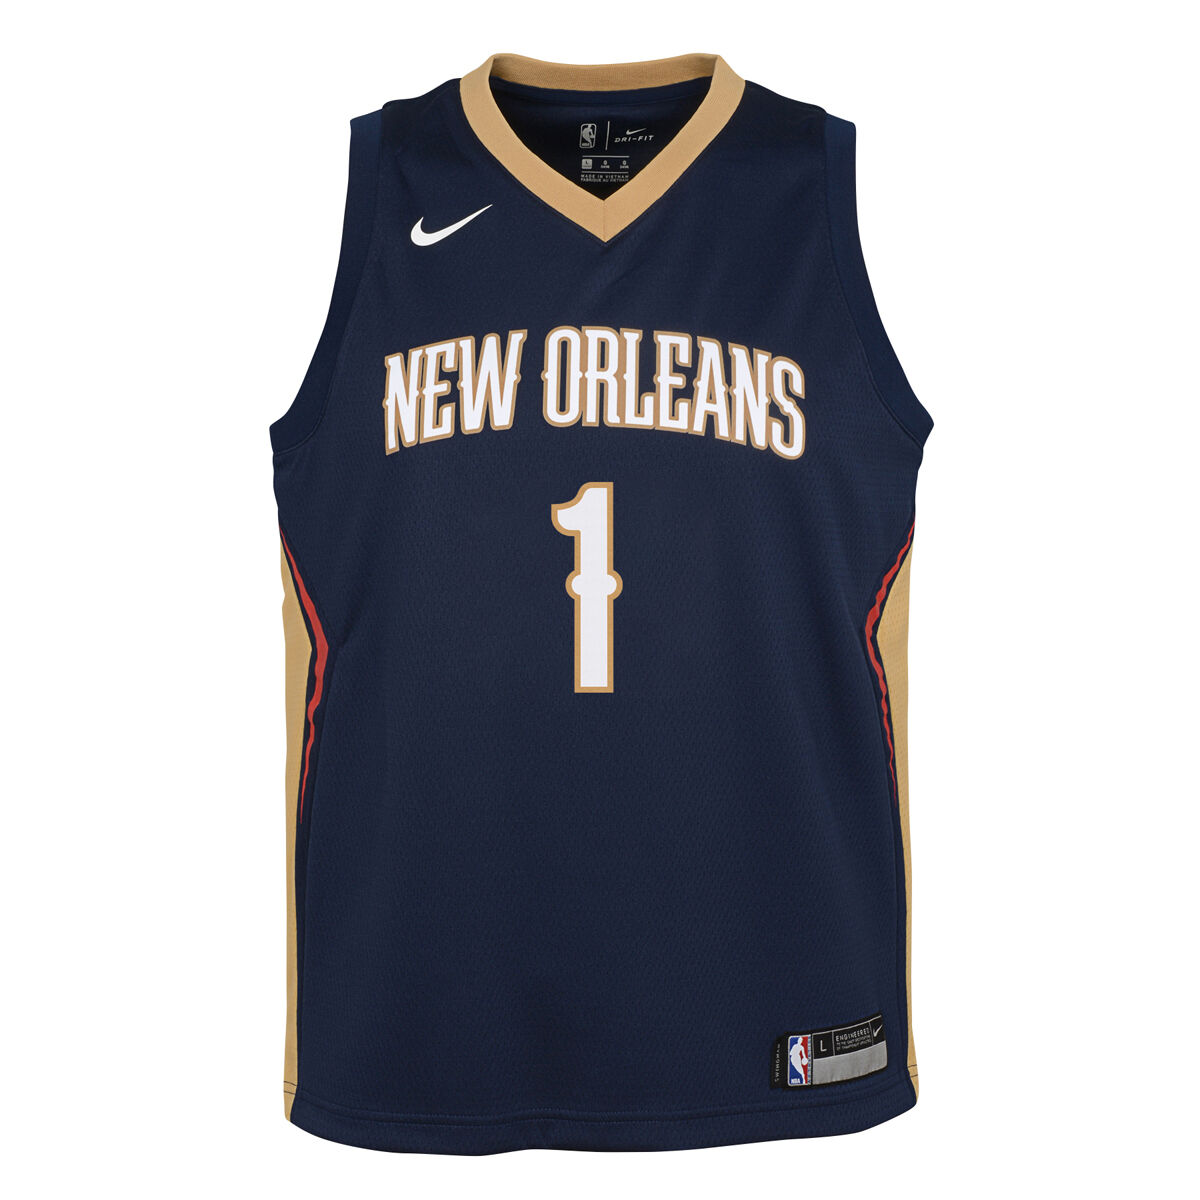 pelicans jersey 2019